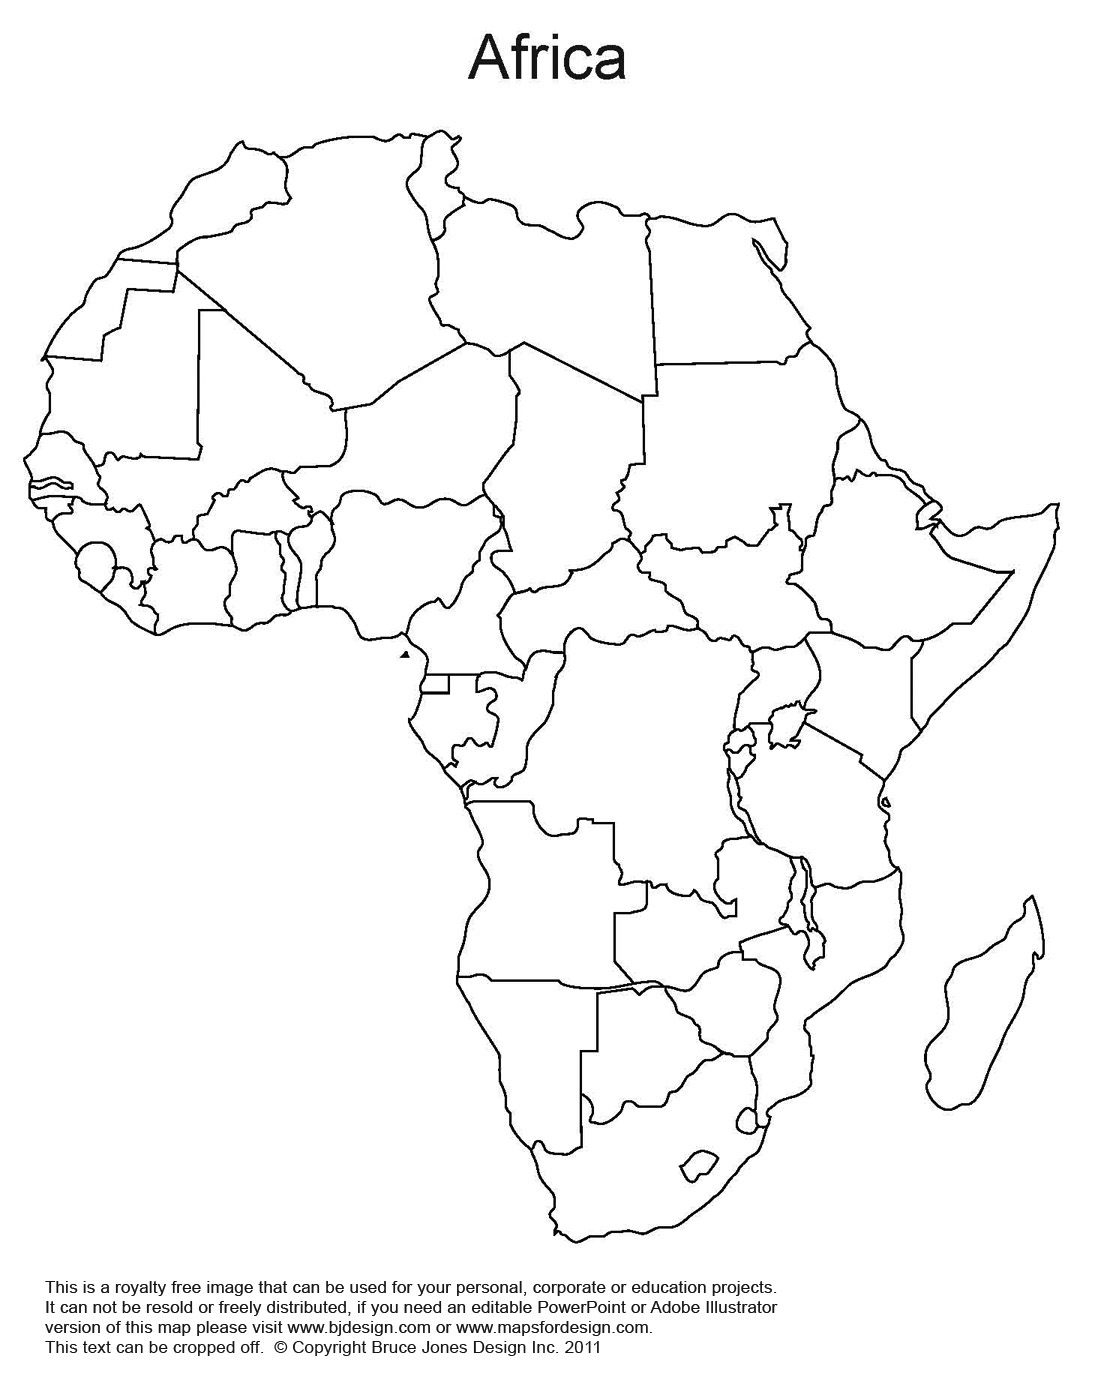 Africa_WorldRegionsNoText.jpg